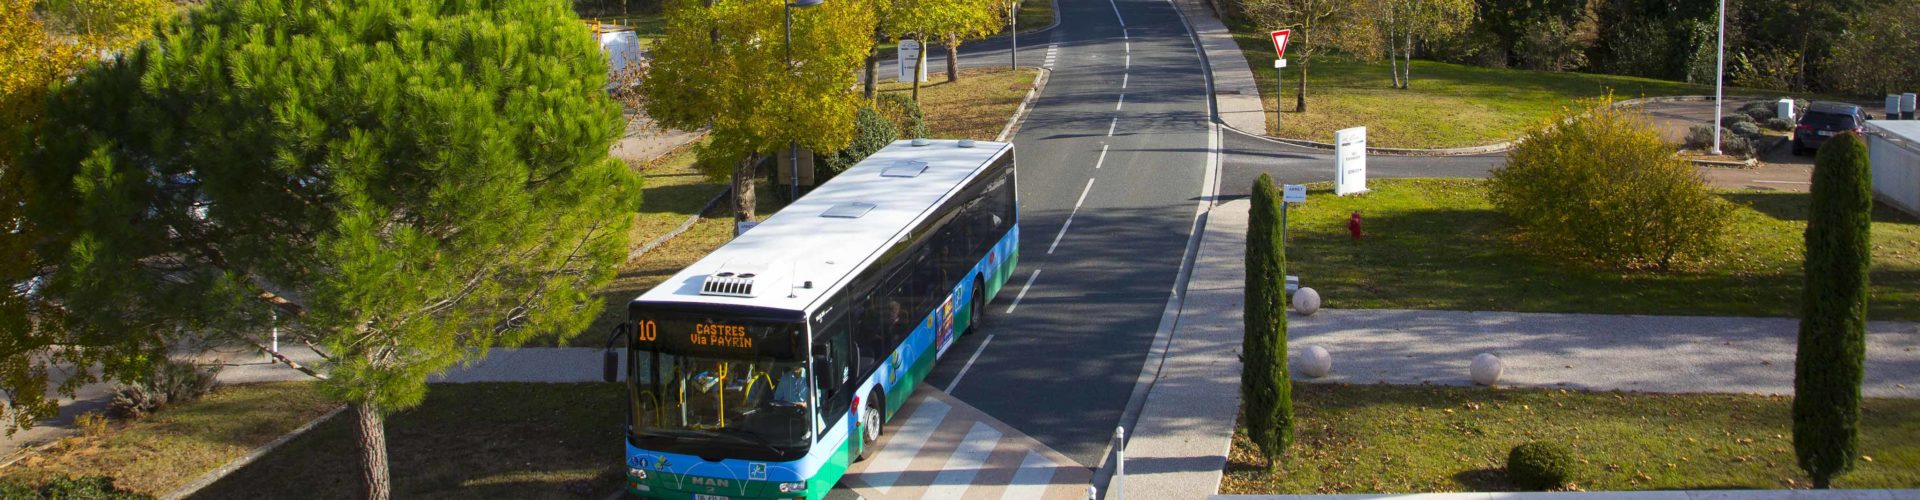 Bus de l'agglomération de Castres-Mazamet